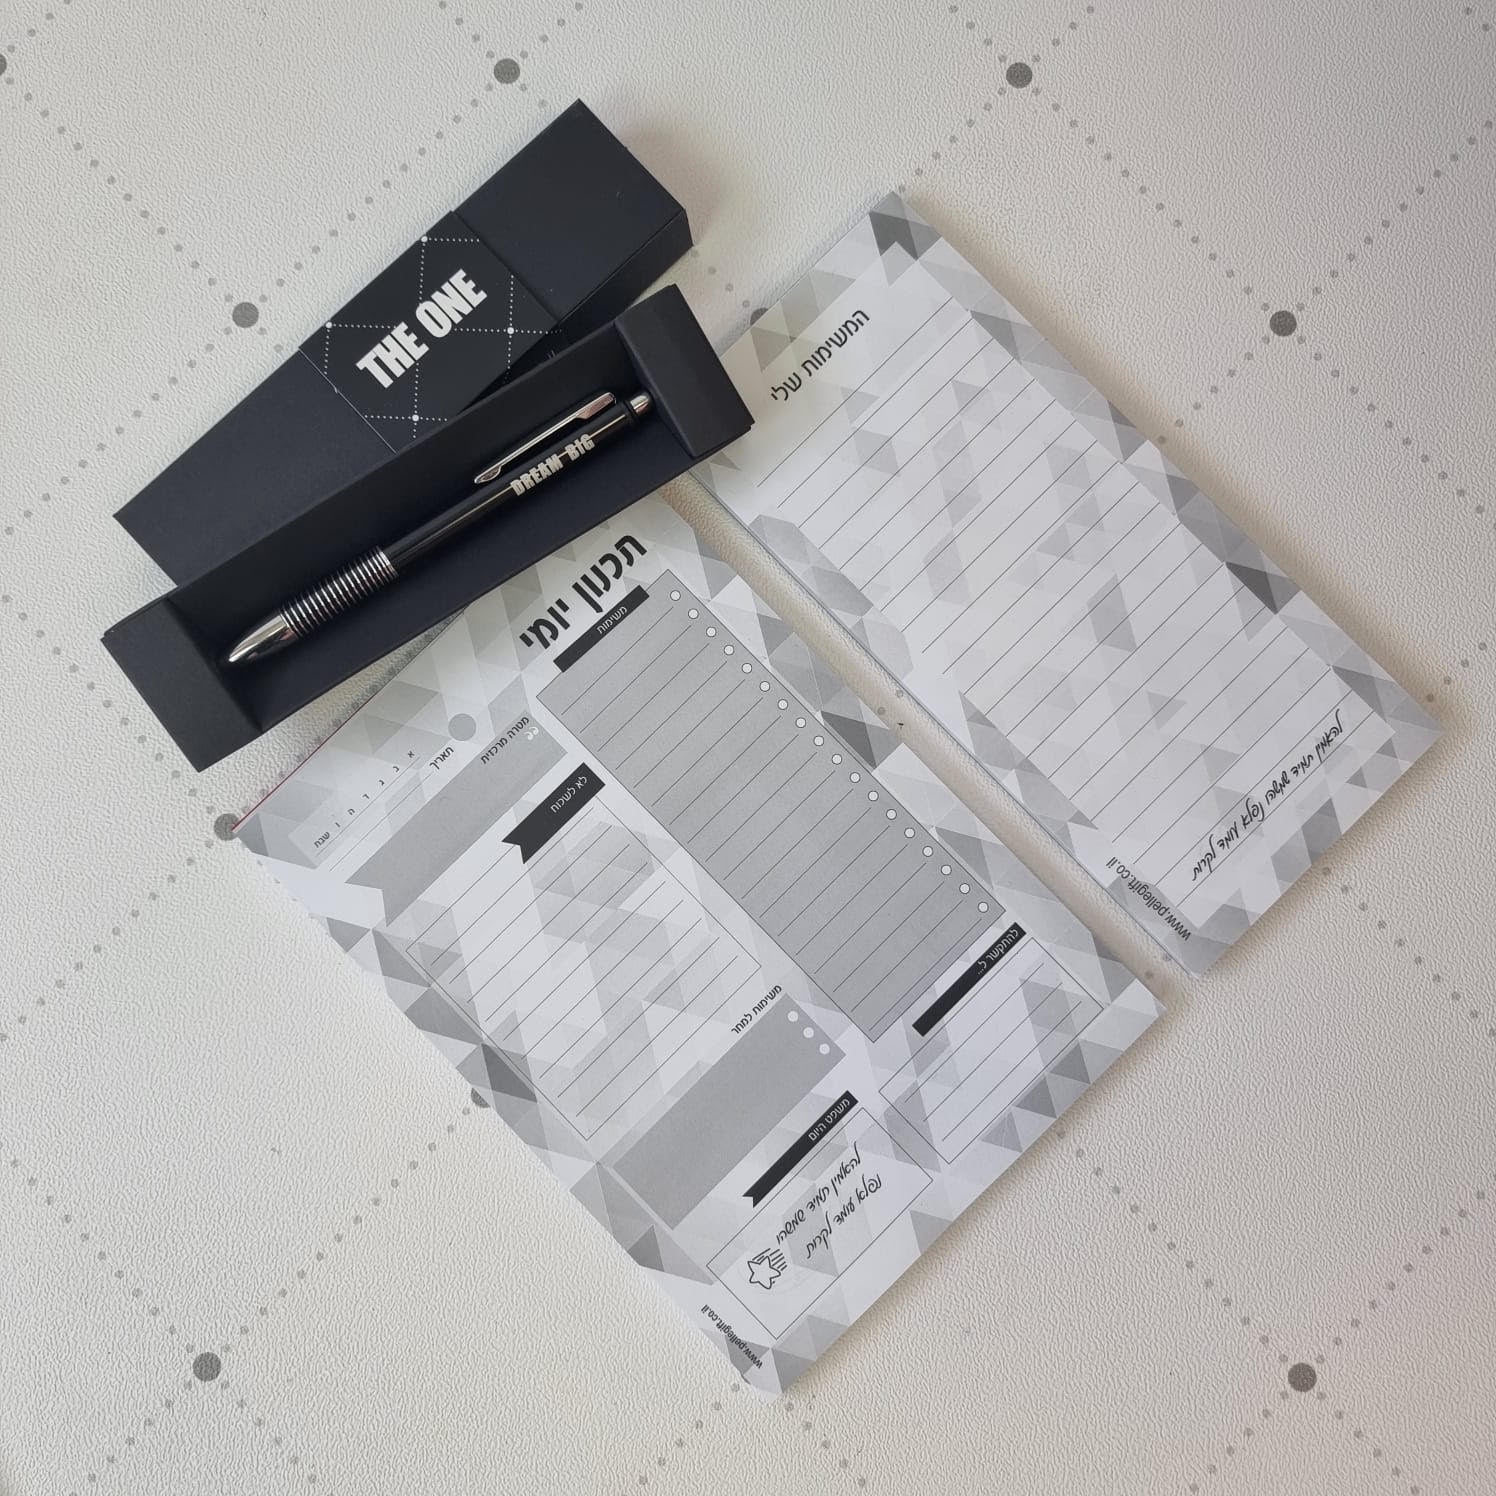 DREAM BIG סט לוח תכנון יומי ובלוק טו דו אפור גאומטרי עם עט שחור